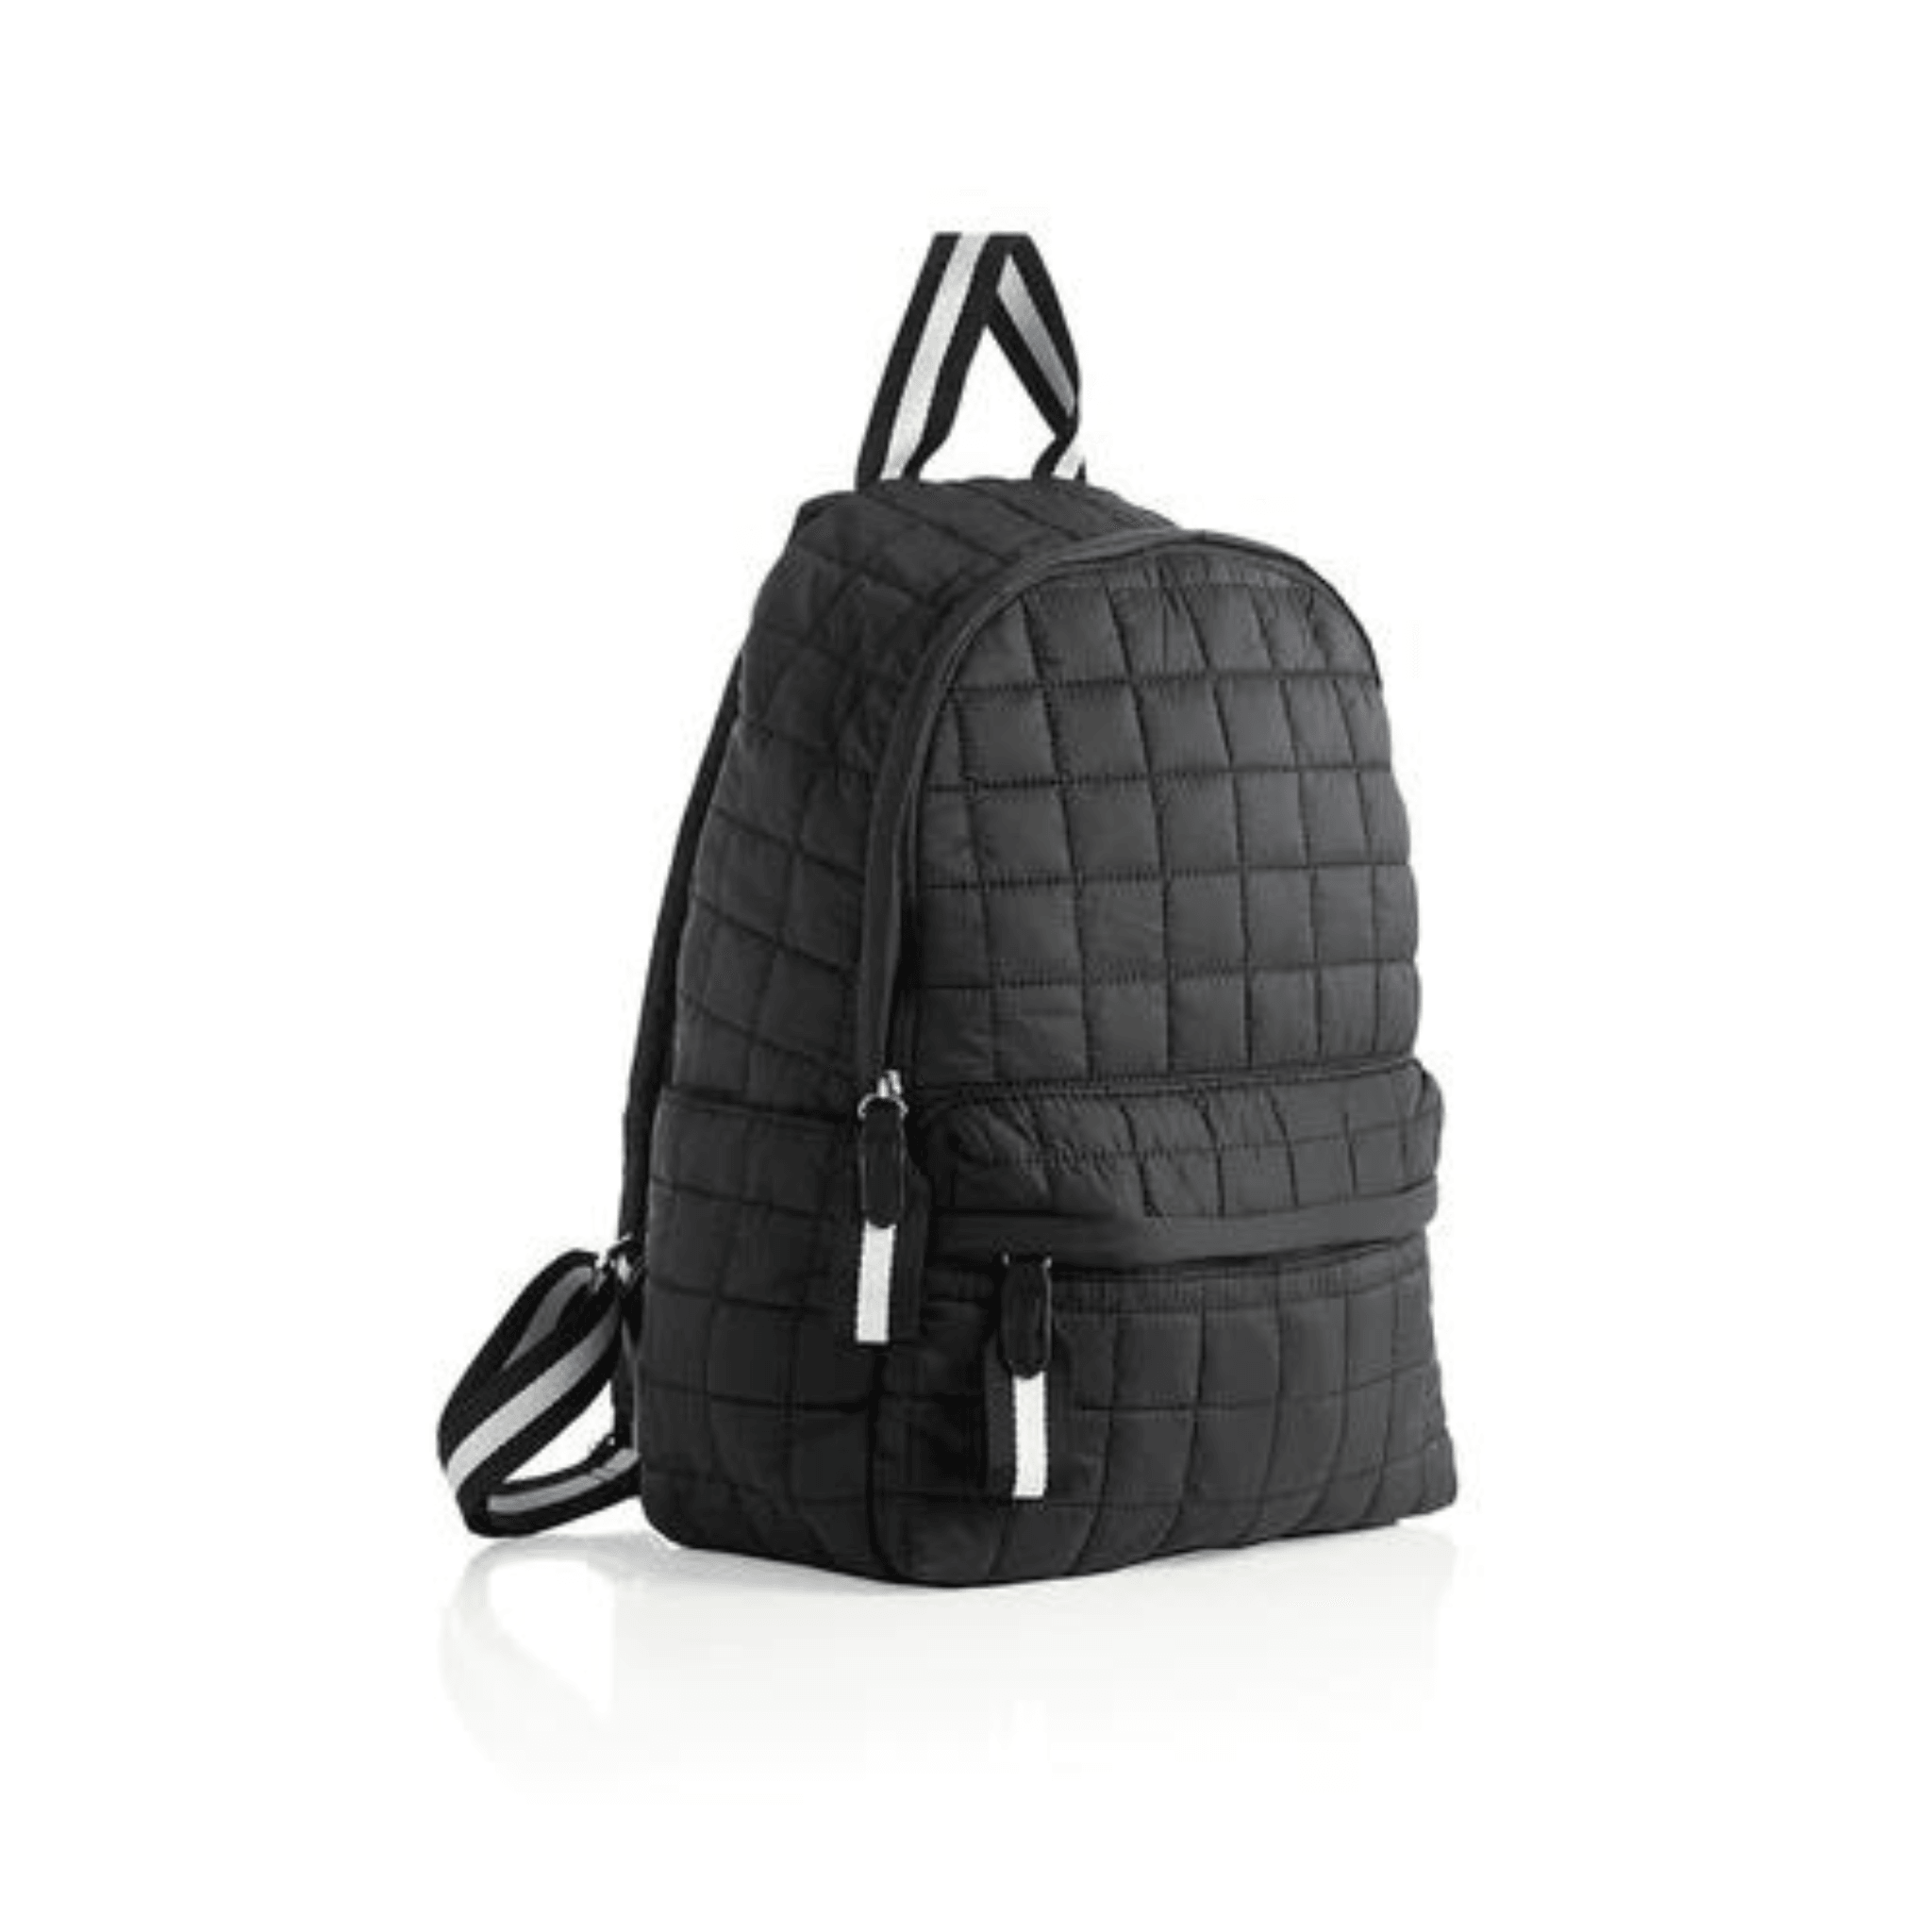 Woman's Fancy Backpack | eBay